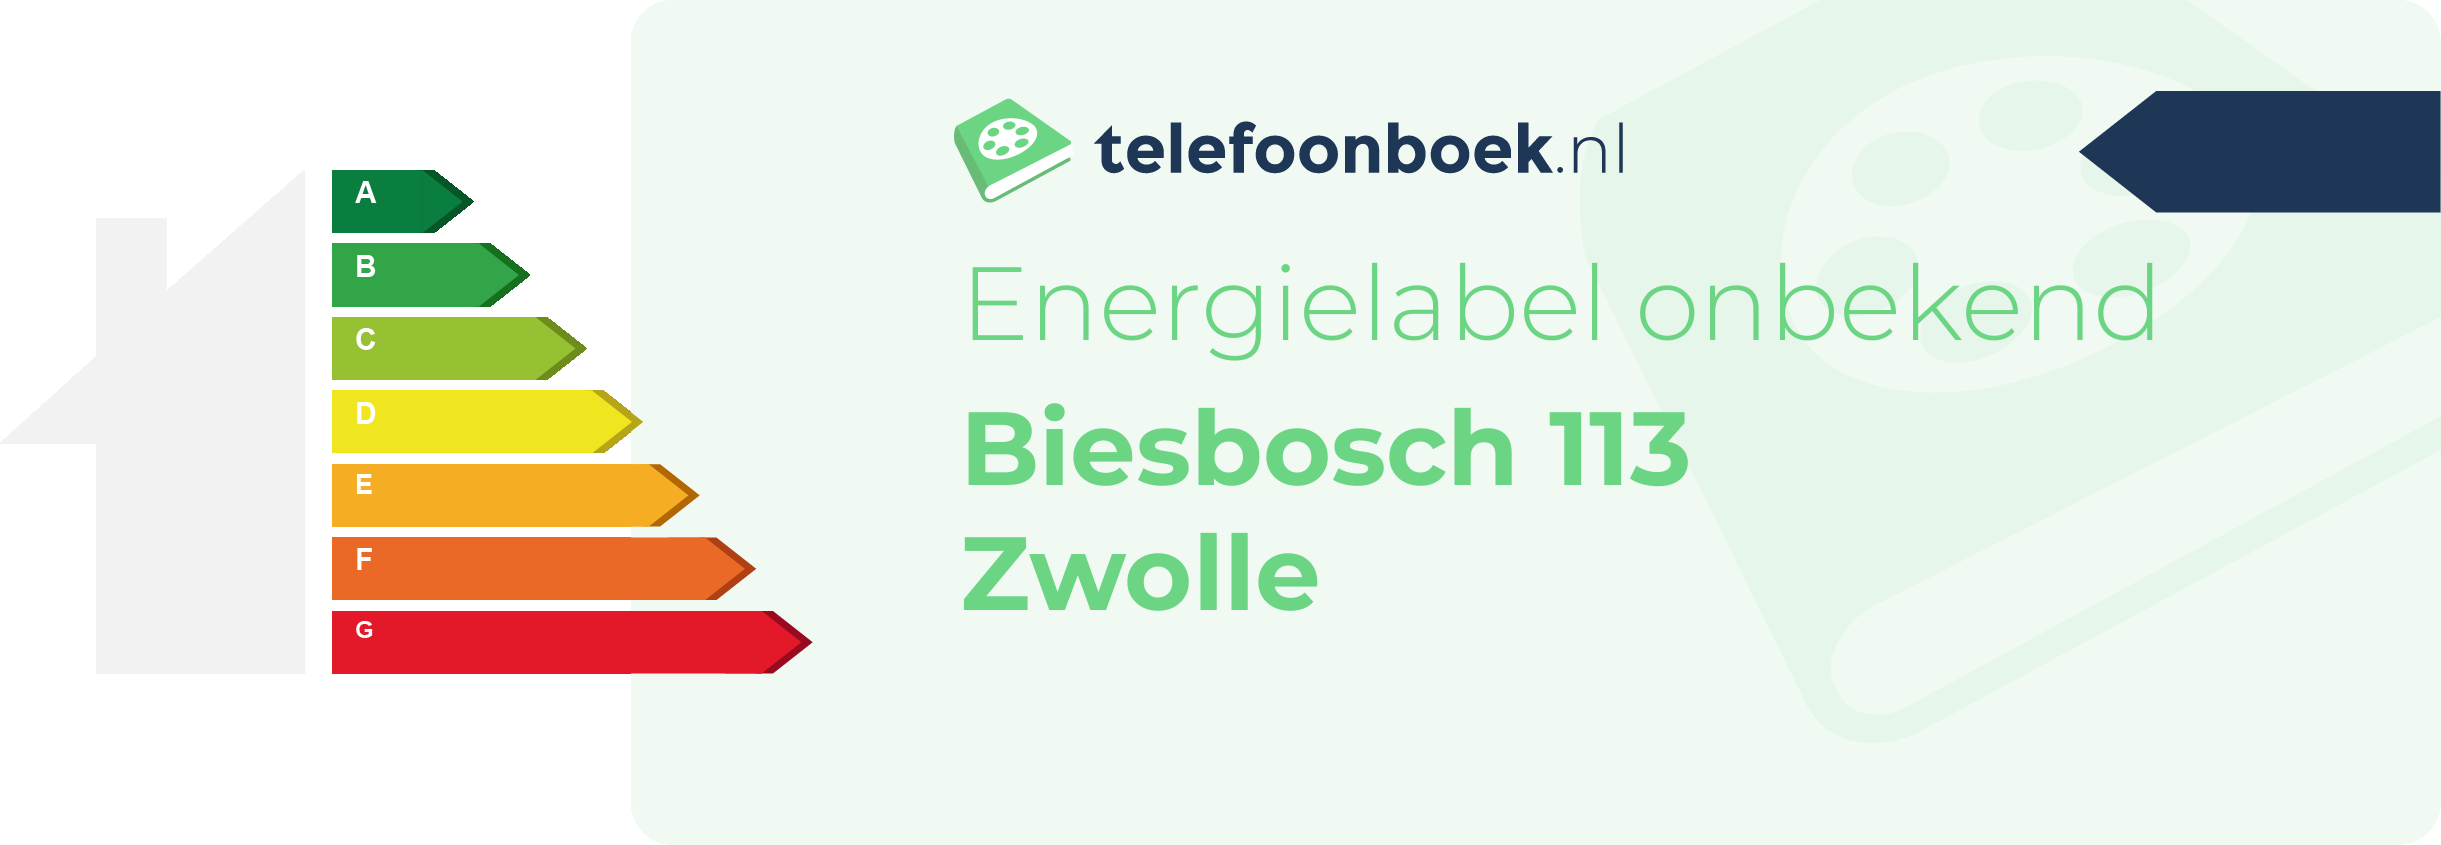 Energielabel Biesbosch 113 Zwolle